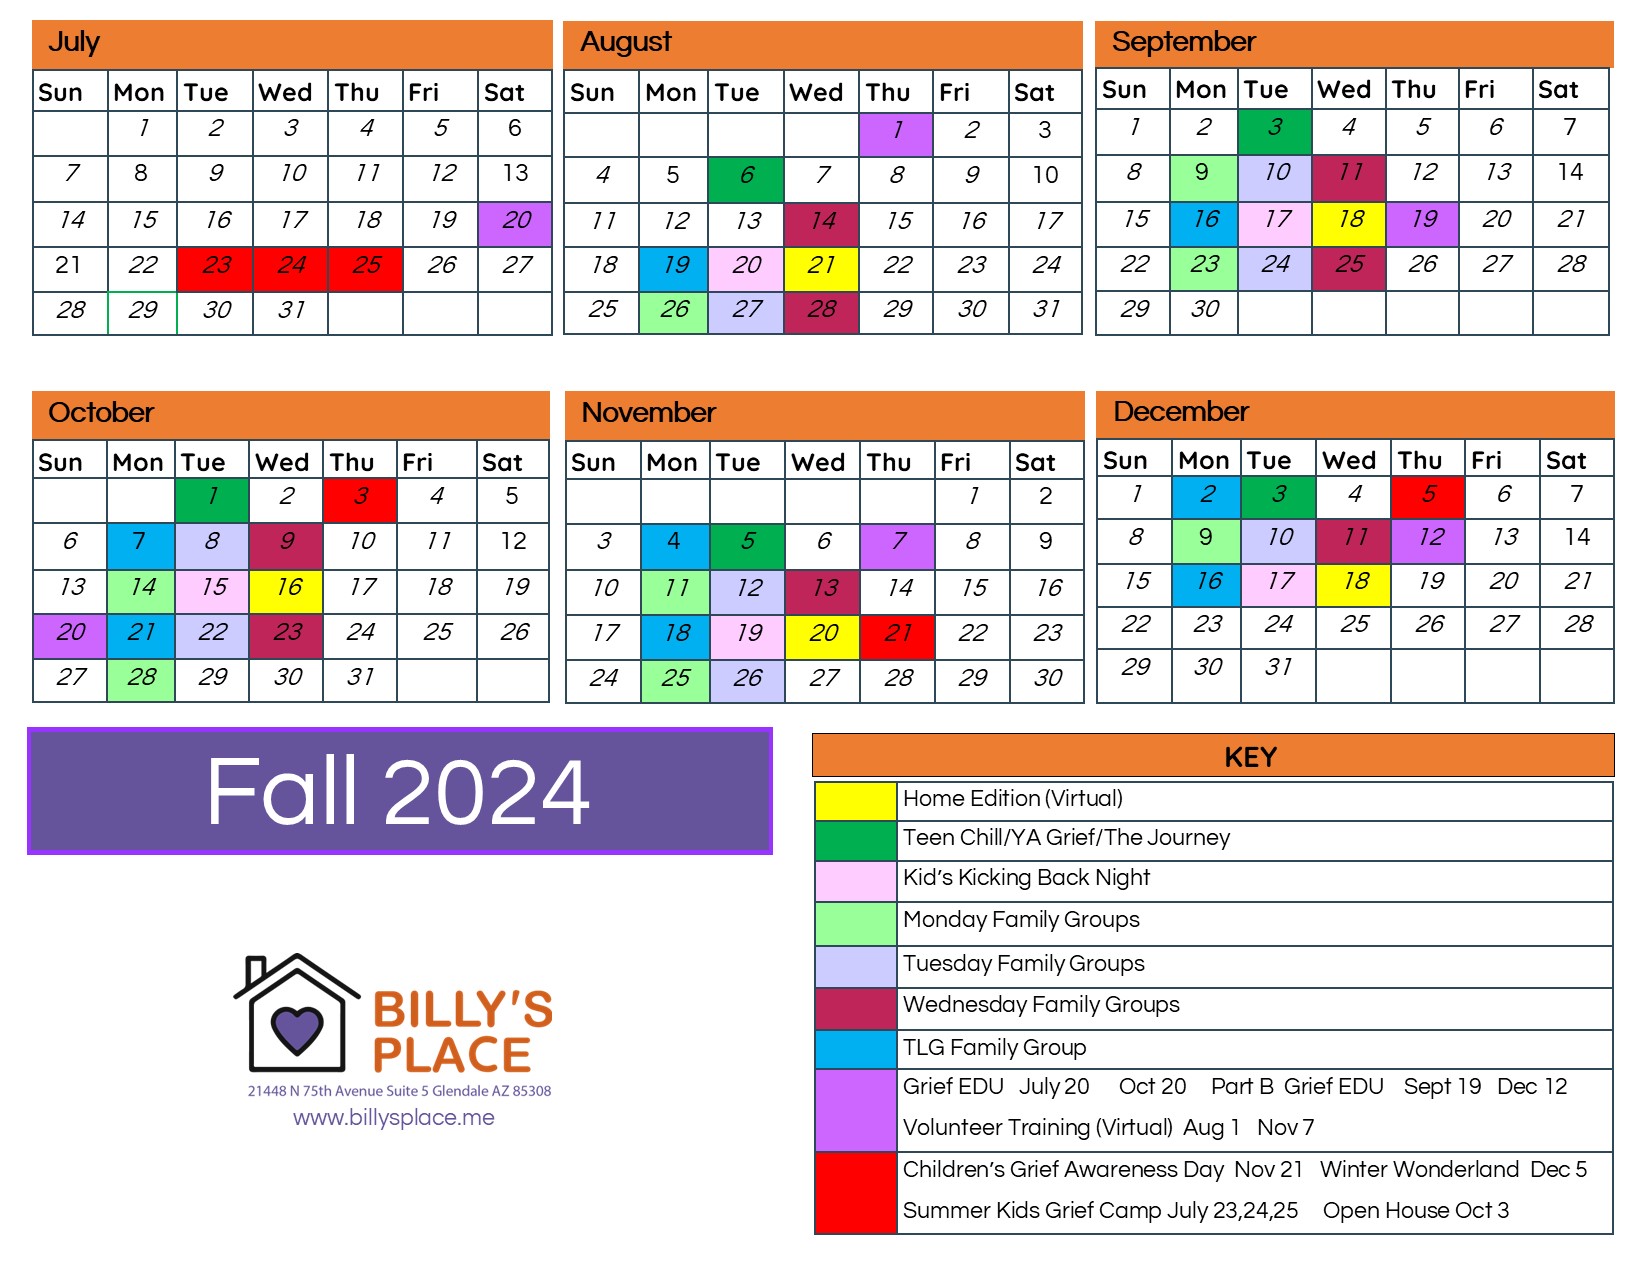 Fall 2024 Calendar Final 5.14